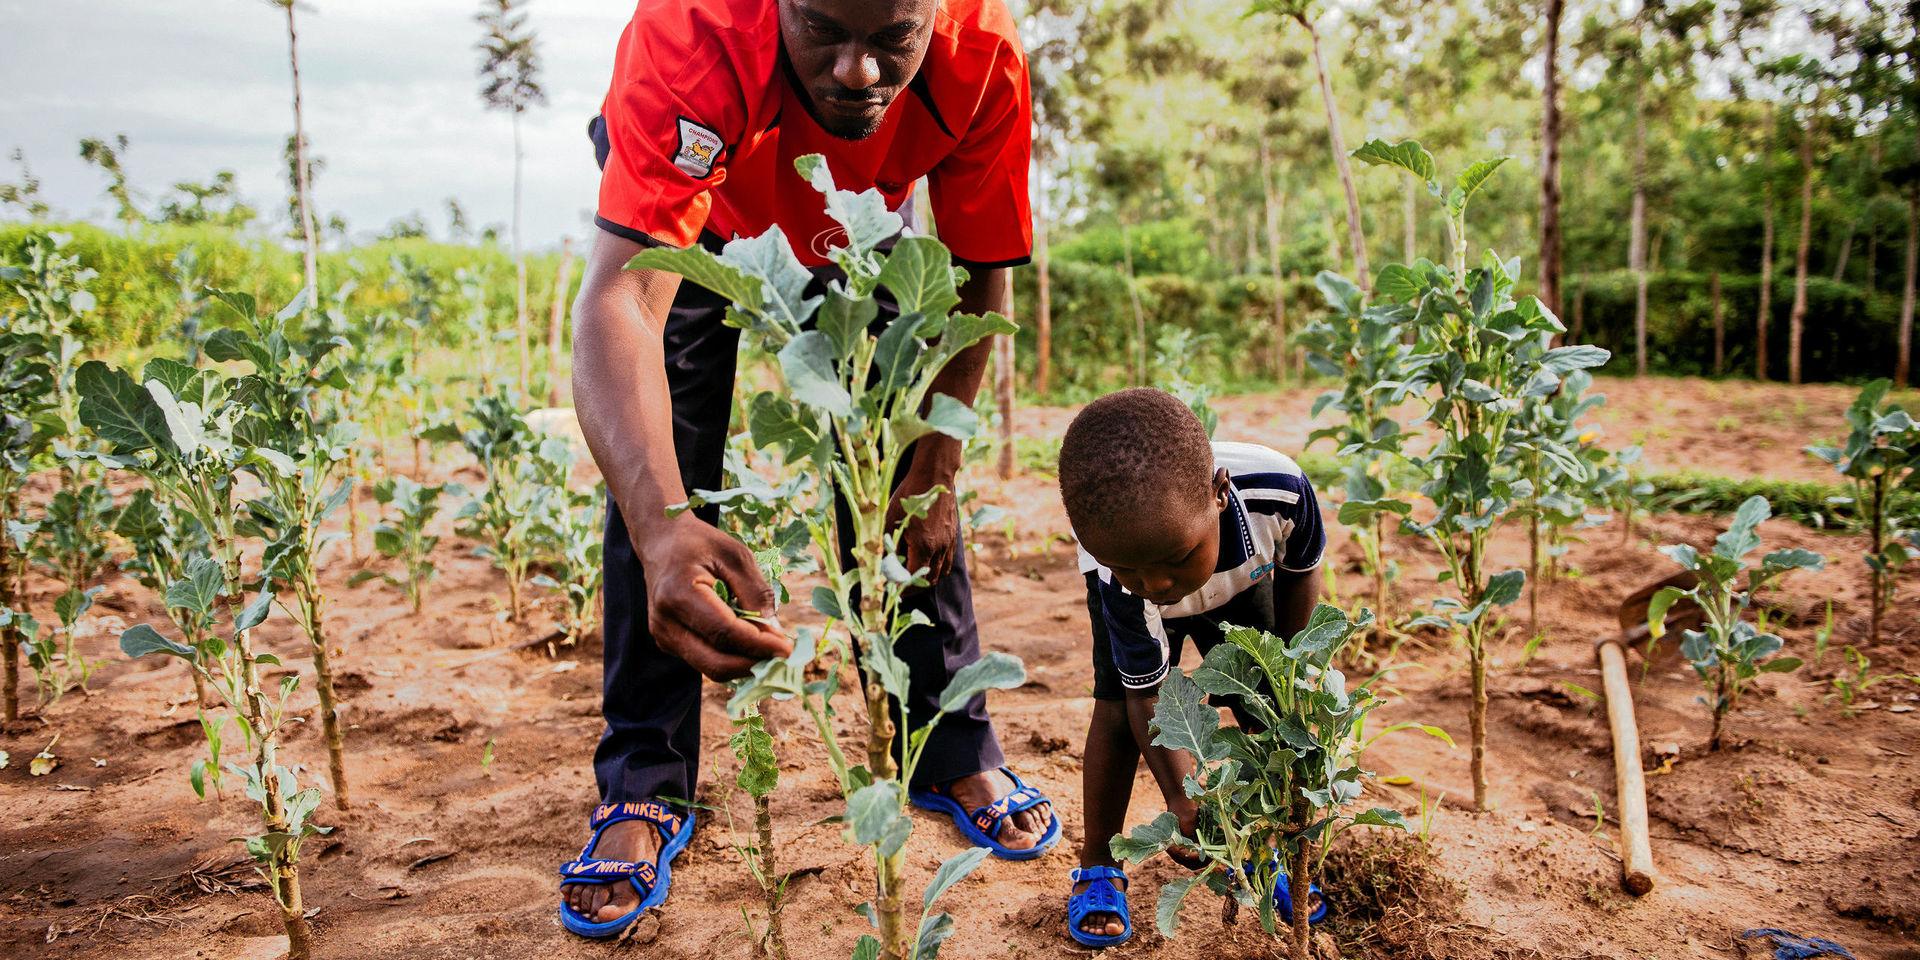 Tredubbad skörd. Kenyanska familjen Otuma är en av de familjer som drabbades av dåliga skördar och jorderosion på grund av torka och översvämningar. Som så många andra familjer i klimatutsatta områden kunde de inte äta sig mätta. Efter att ha ställt om till mer hållbart jordbrukande, med trädplantering som en viktig del, har de fått bördigare mark och tredubblat sin skörd, skriver debattören.